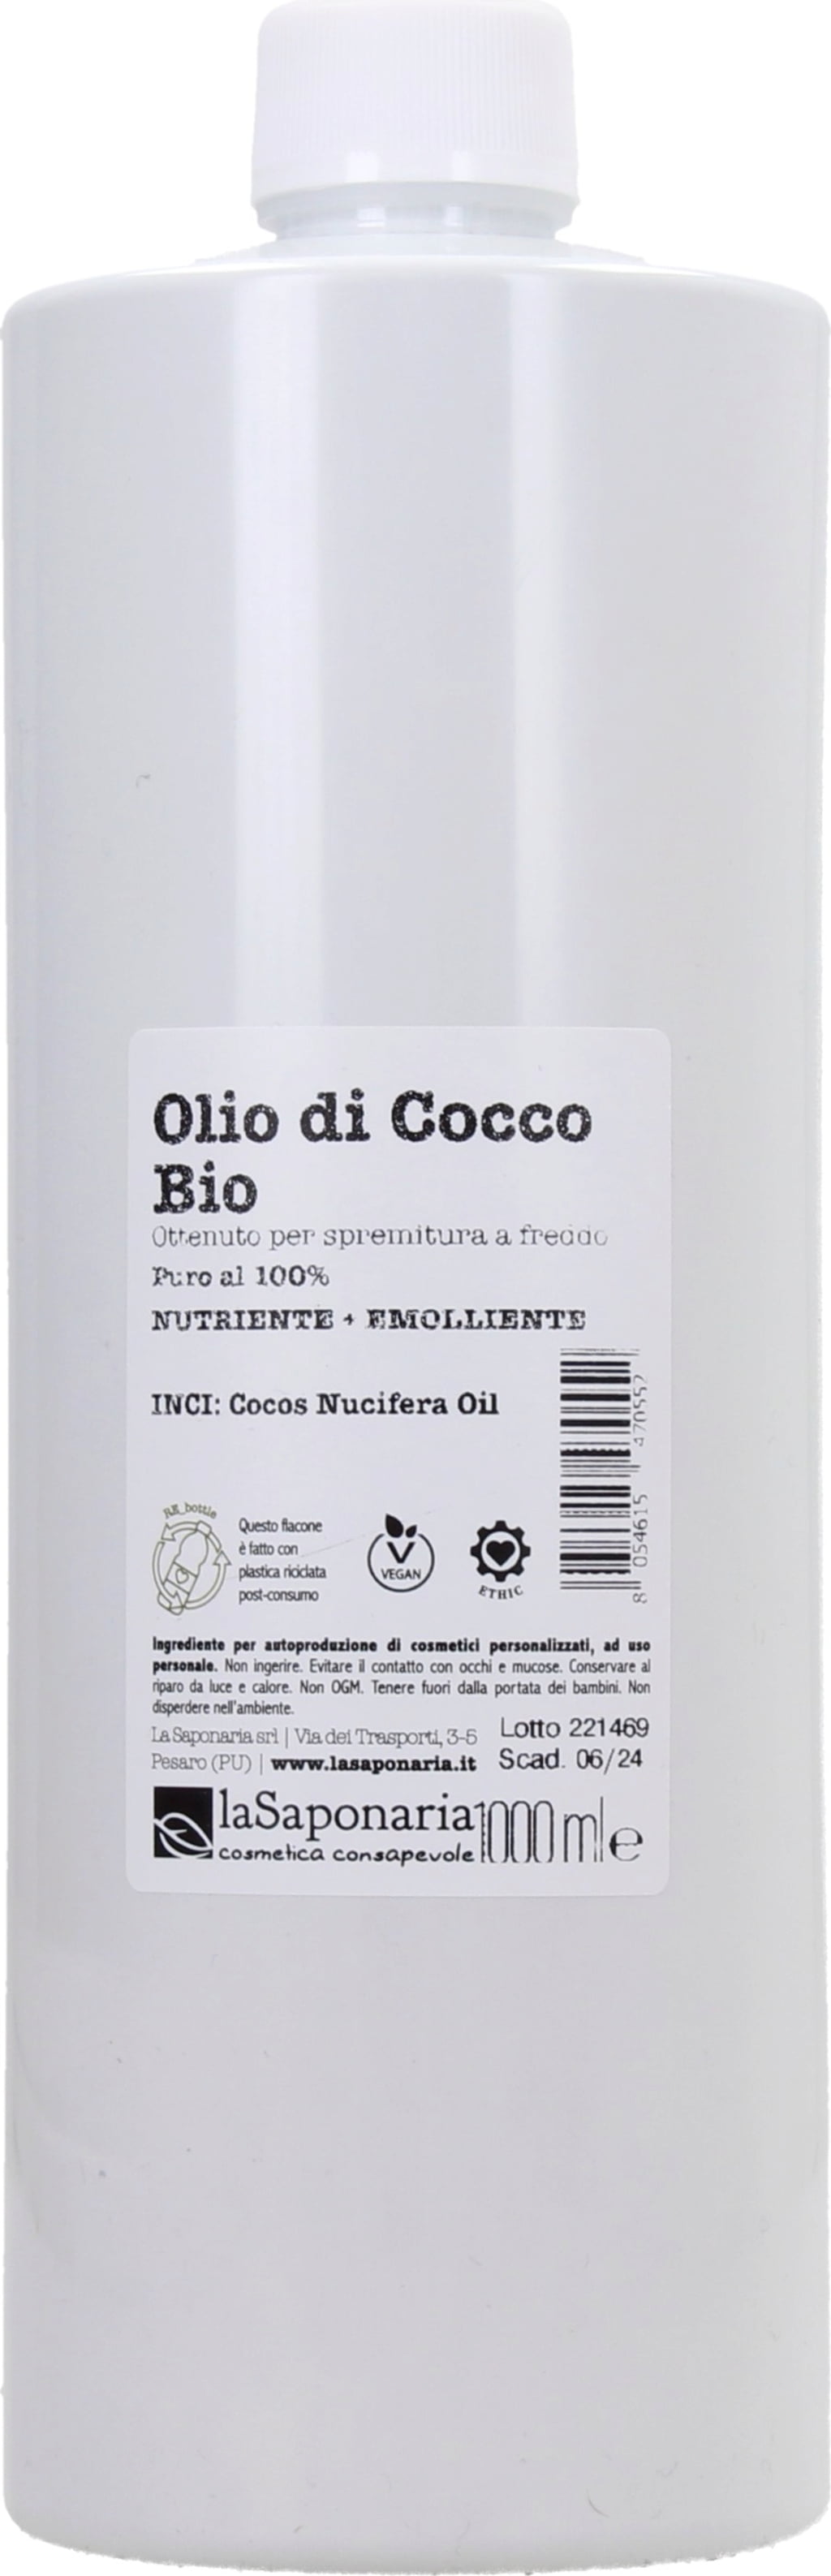 La Saponaria Olio di Cocco Bio - 1 L